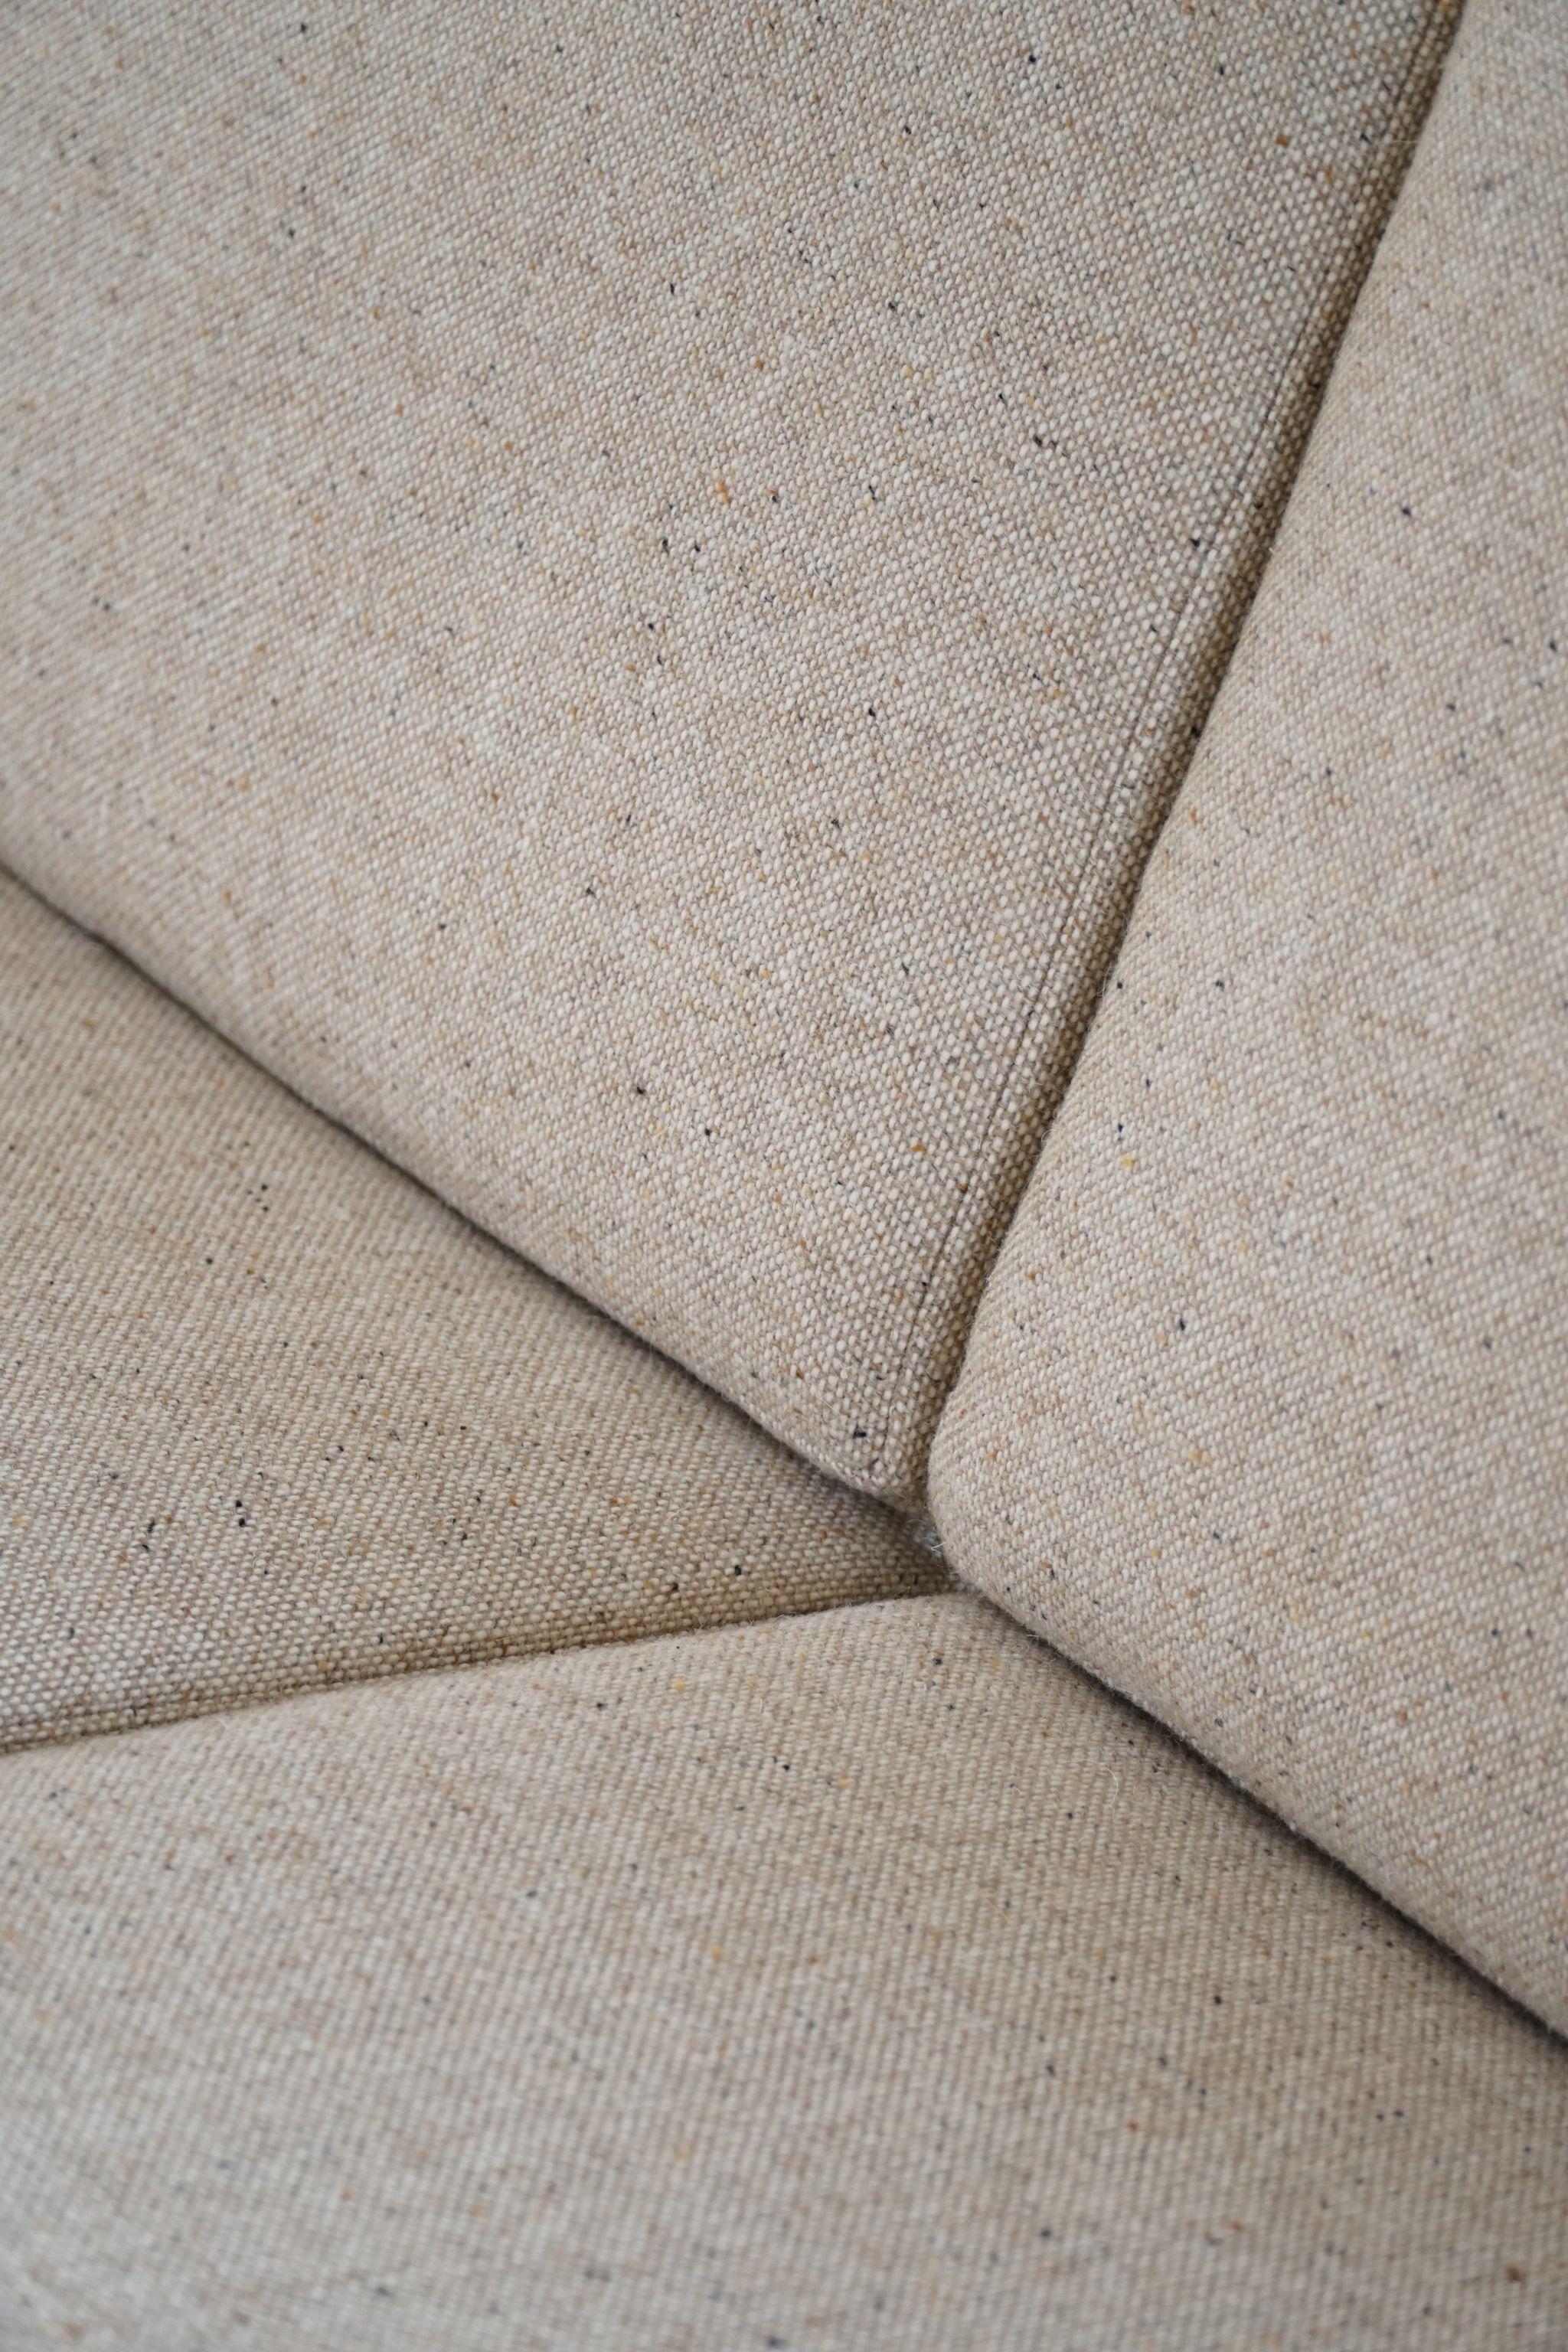 Wool Hans J. Wegner for Getama, 3-Seater Sofa, Model 